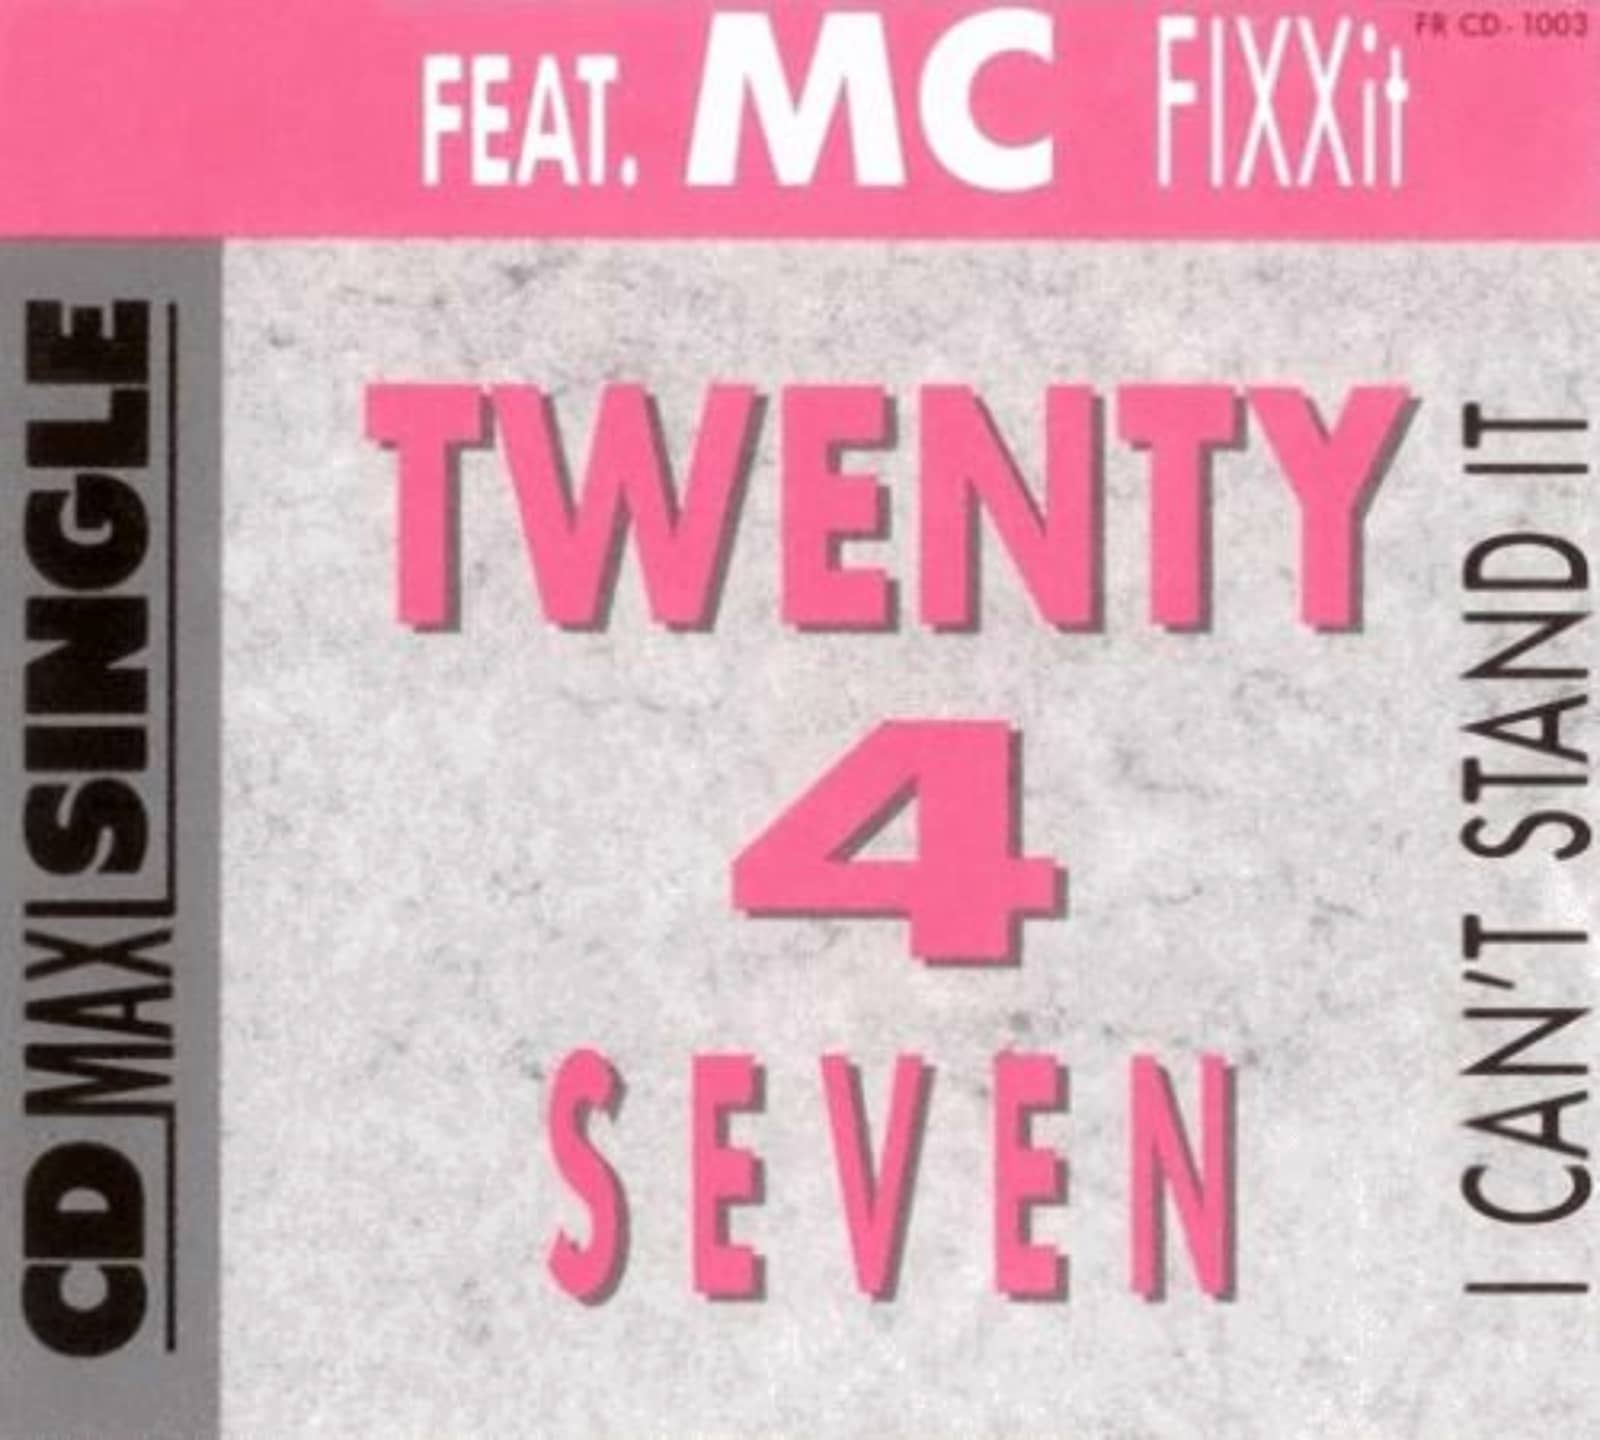 Twenty one four. MC Fixx it. Twenty 4 Seven - i can't Stand it. Twenty 4 Seven. Maxx no more i can't Stand it.